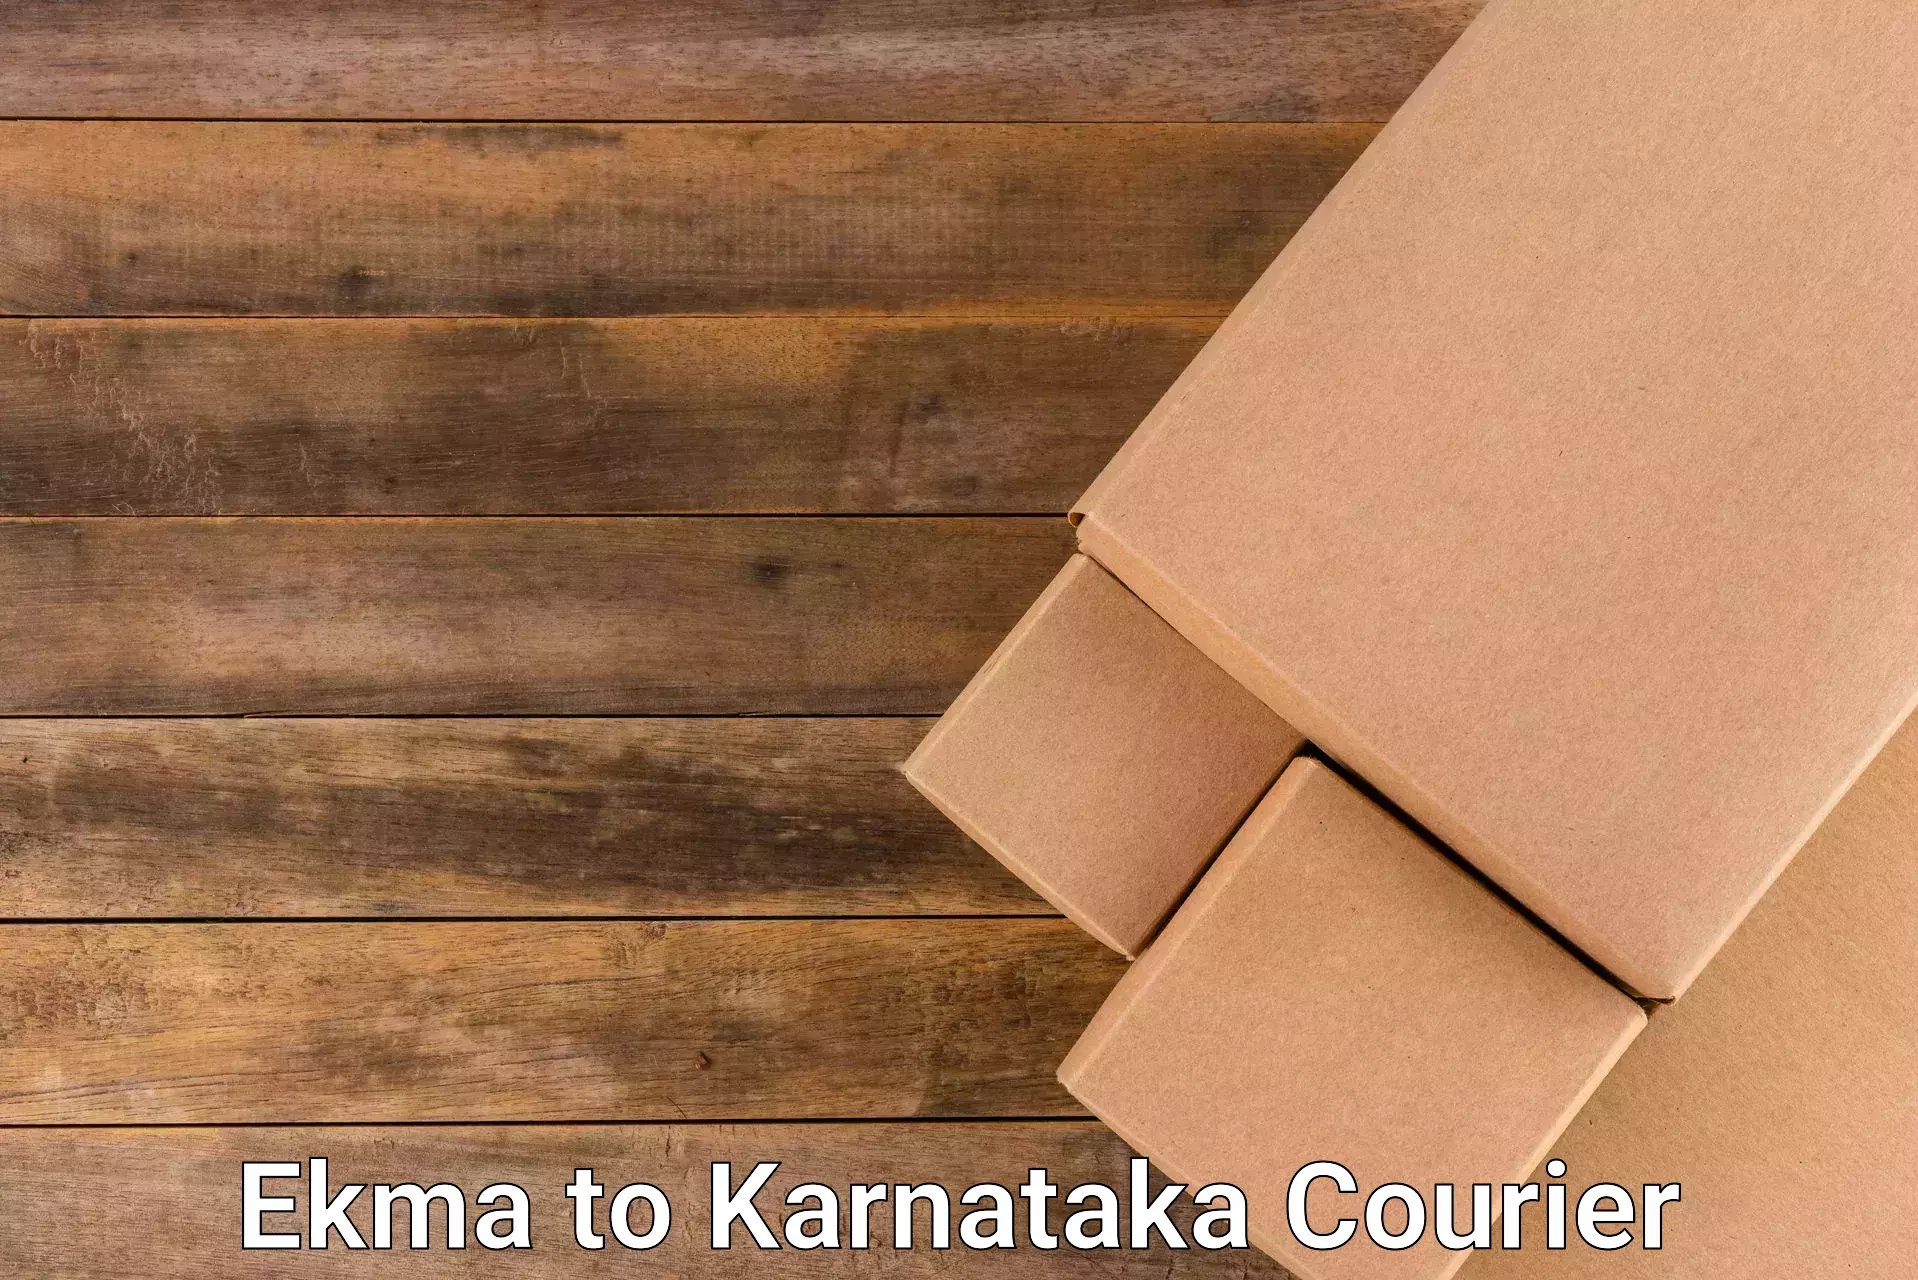 Express package handling Ekma to Karnataka